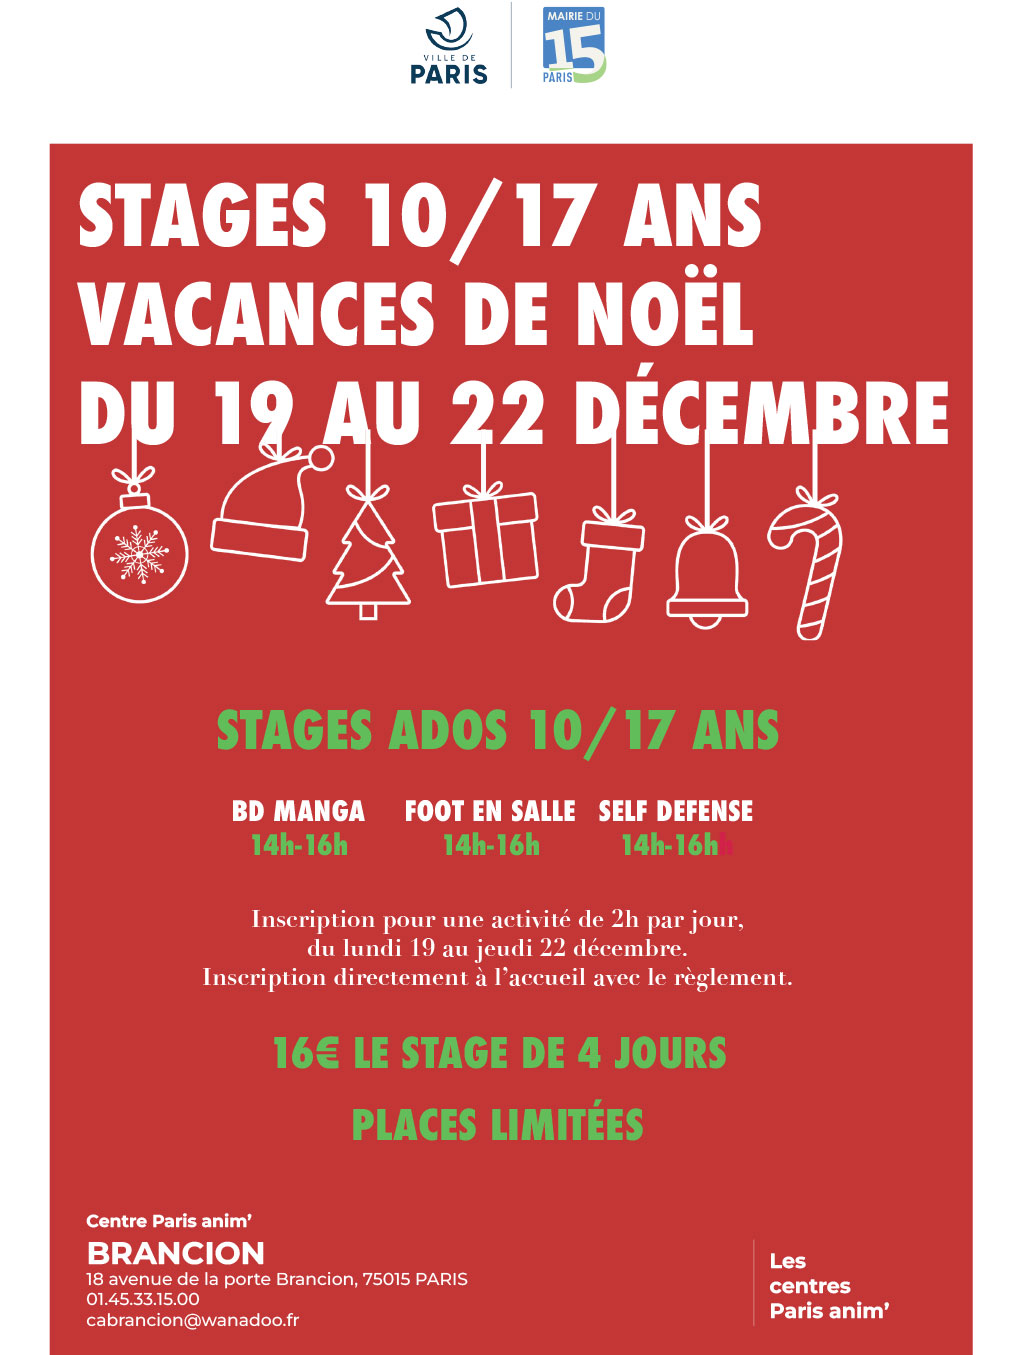 Stages de Noel 2022 pour adolescents au centre Brancion PARIS ANIM' 15 du 19 au 22 décembre 2022